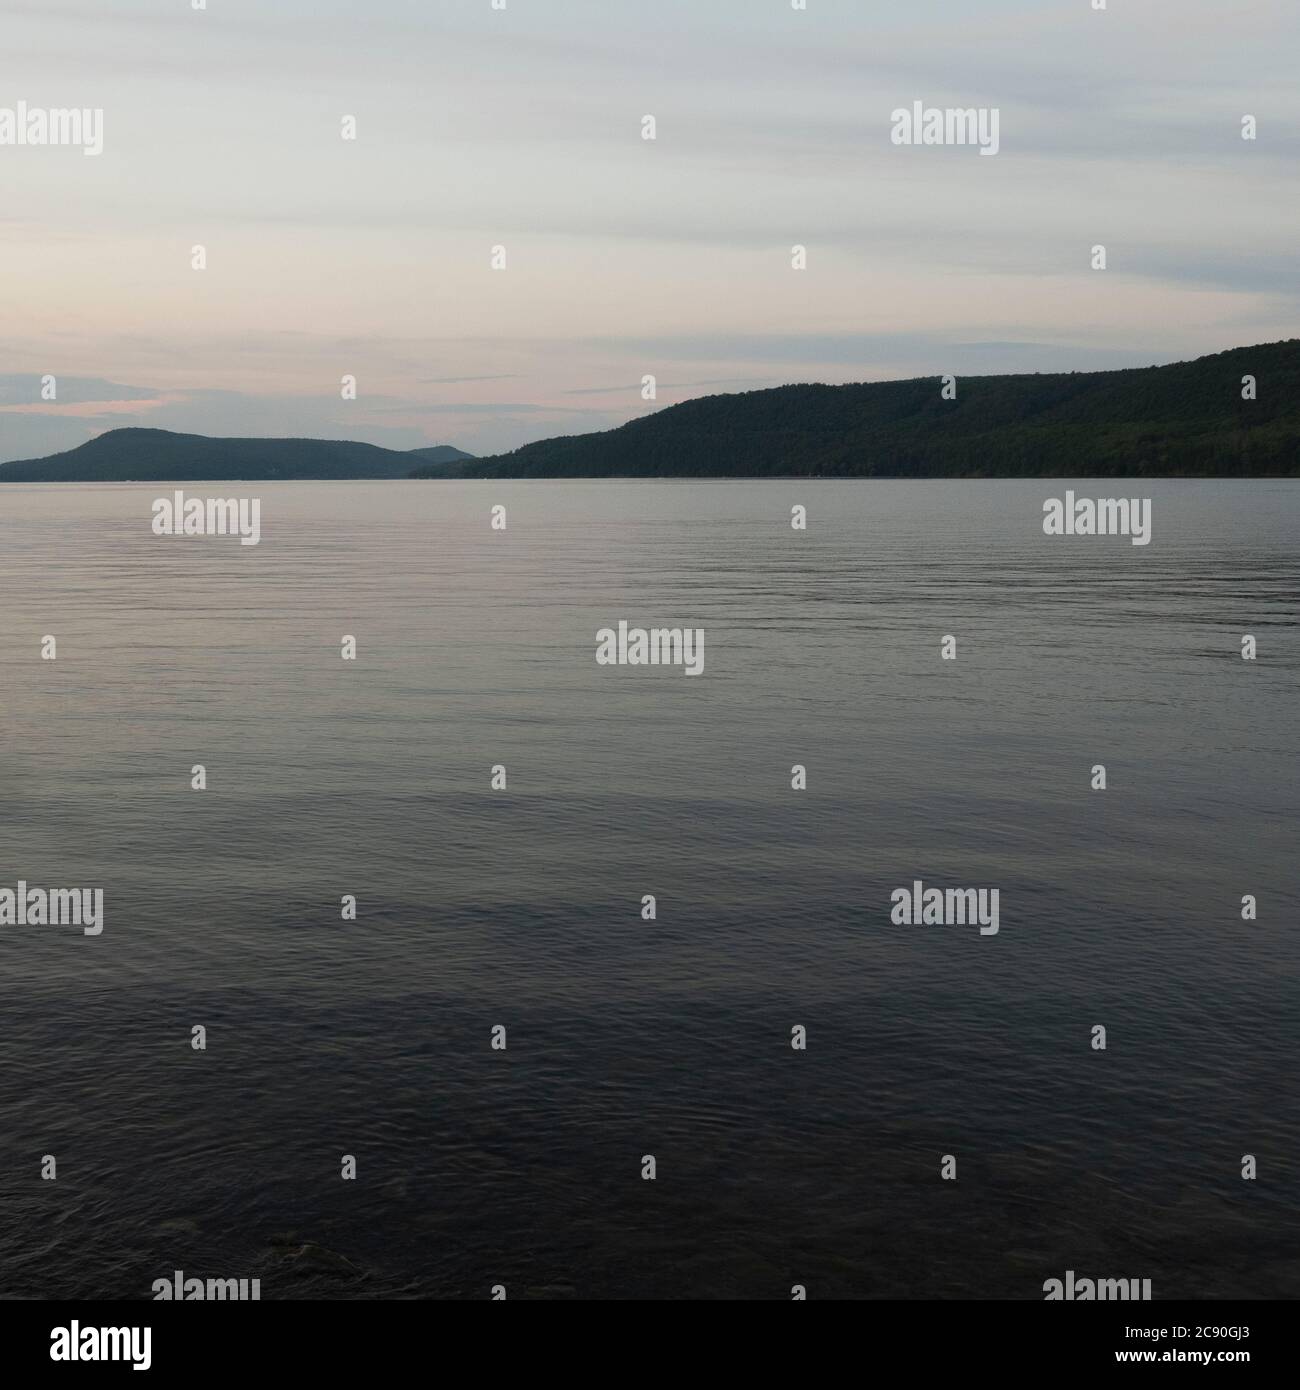 USA, Otsego Lake at dusk Stock Photo